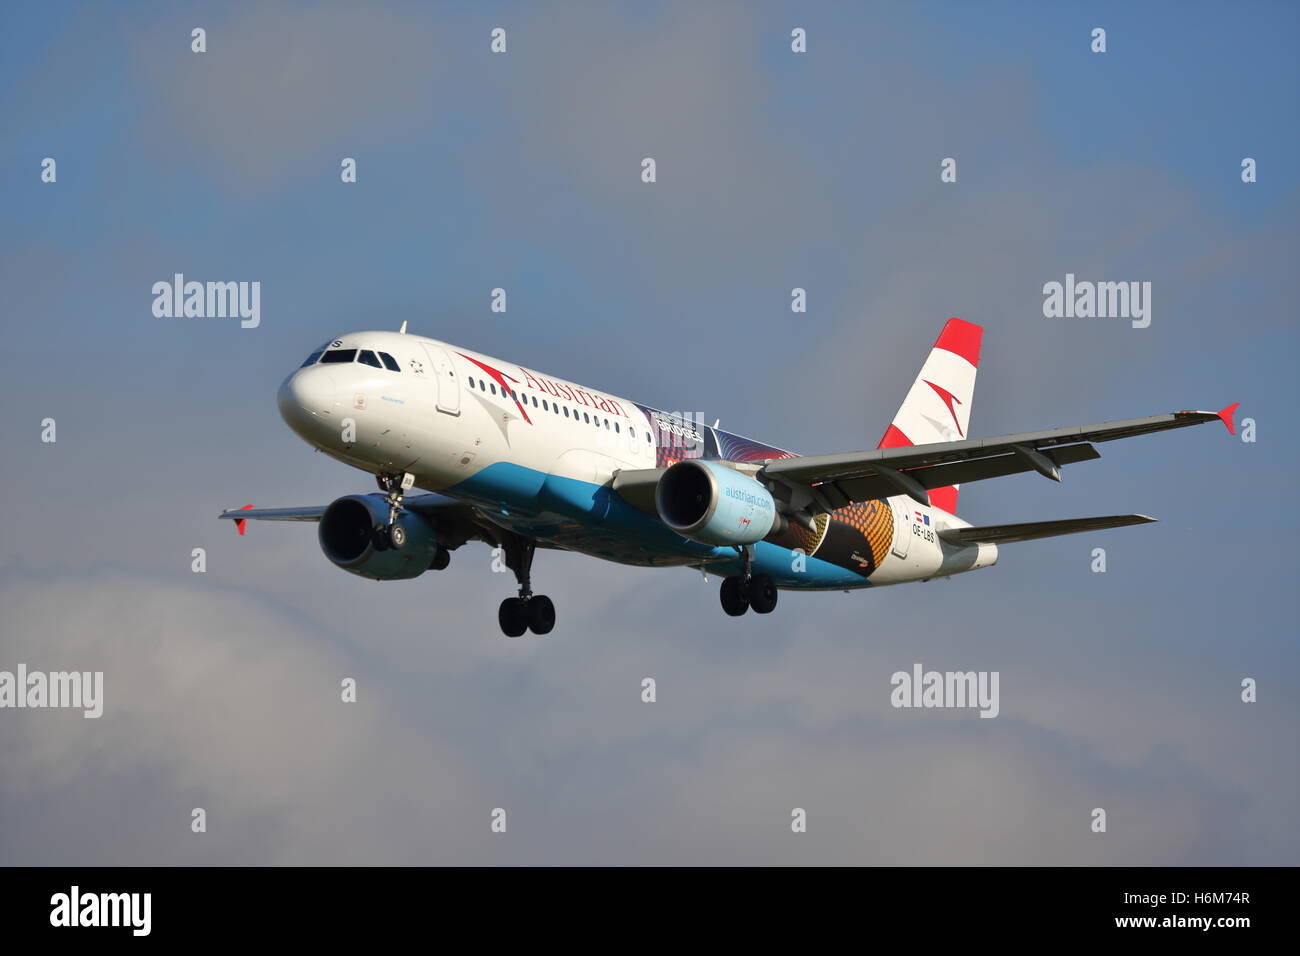 Austrian Airlines Airbus A320-200 OE-lbs à l'atterrissage à l'aéroport Heathrow de Londres, UK Banque D'Images